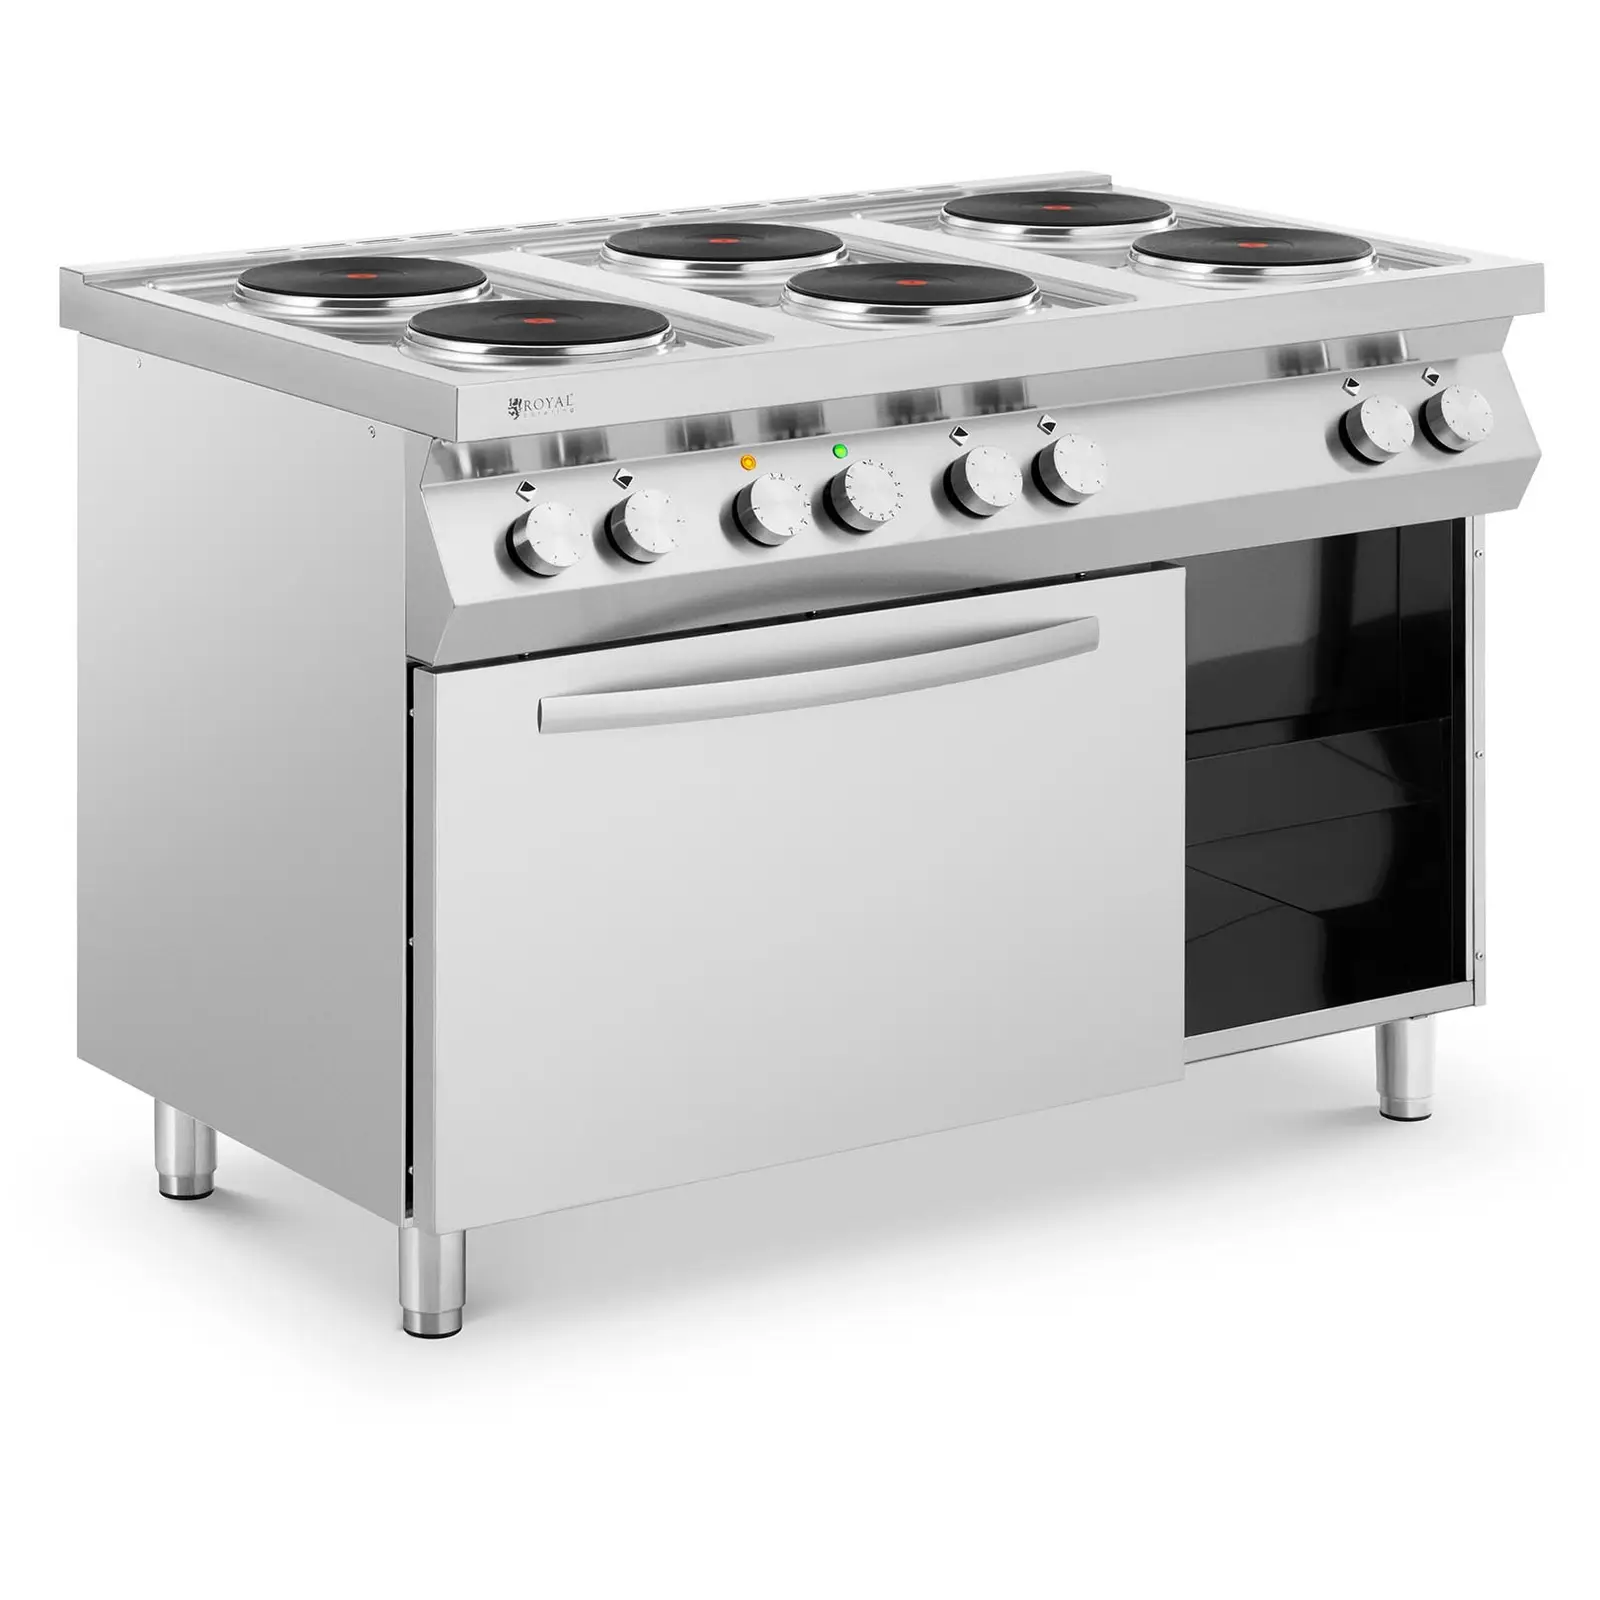 Ηλεκτρική κουζίνα - 15600 W - 6 πιάτα - με φούρνο θερμού αέρα - ντουλάπι βάσης - Royal Catering